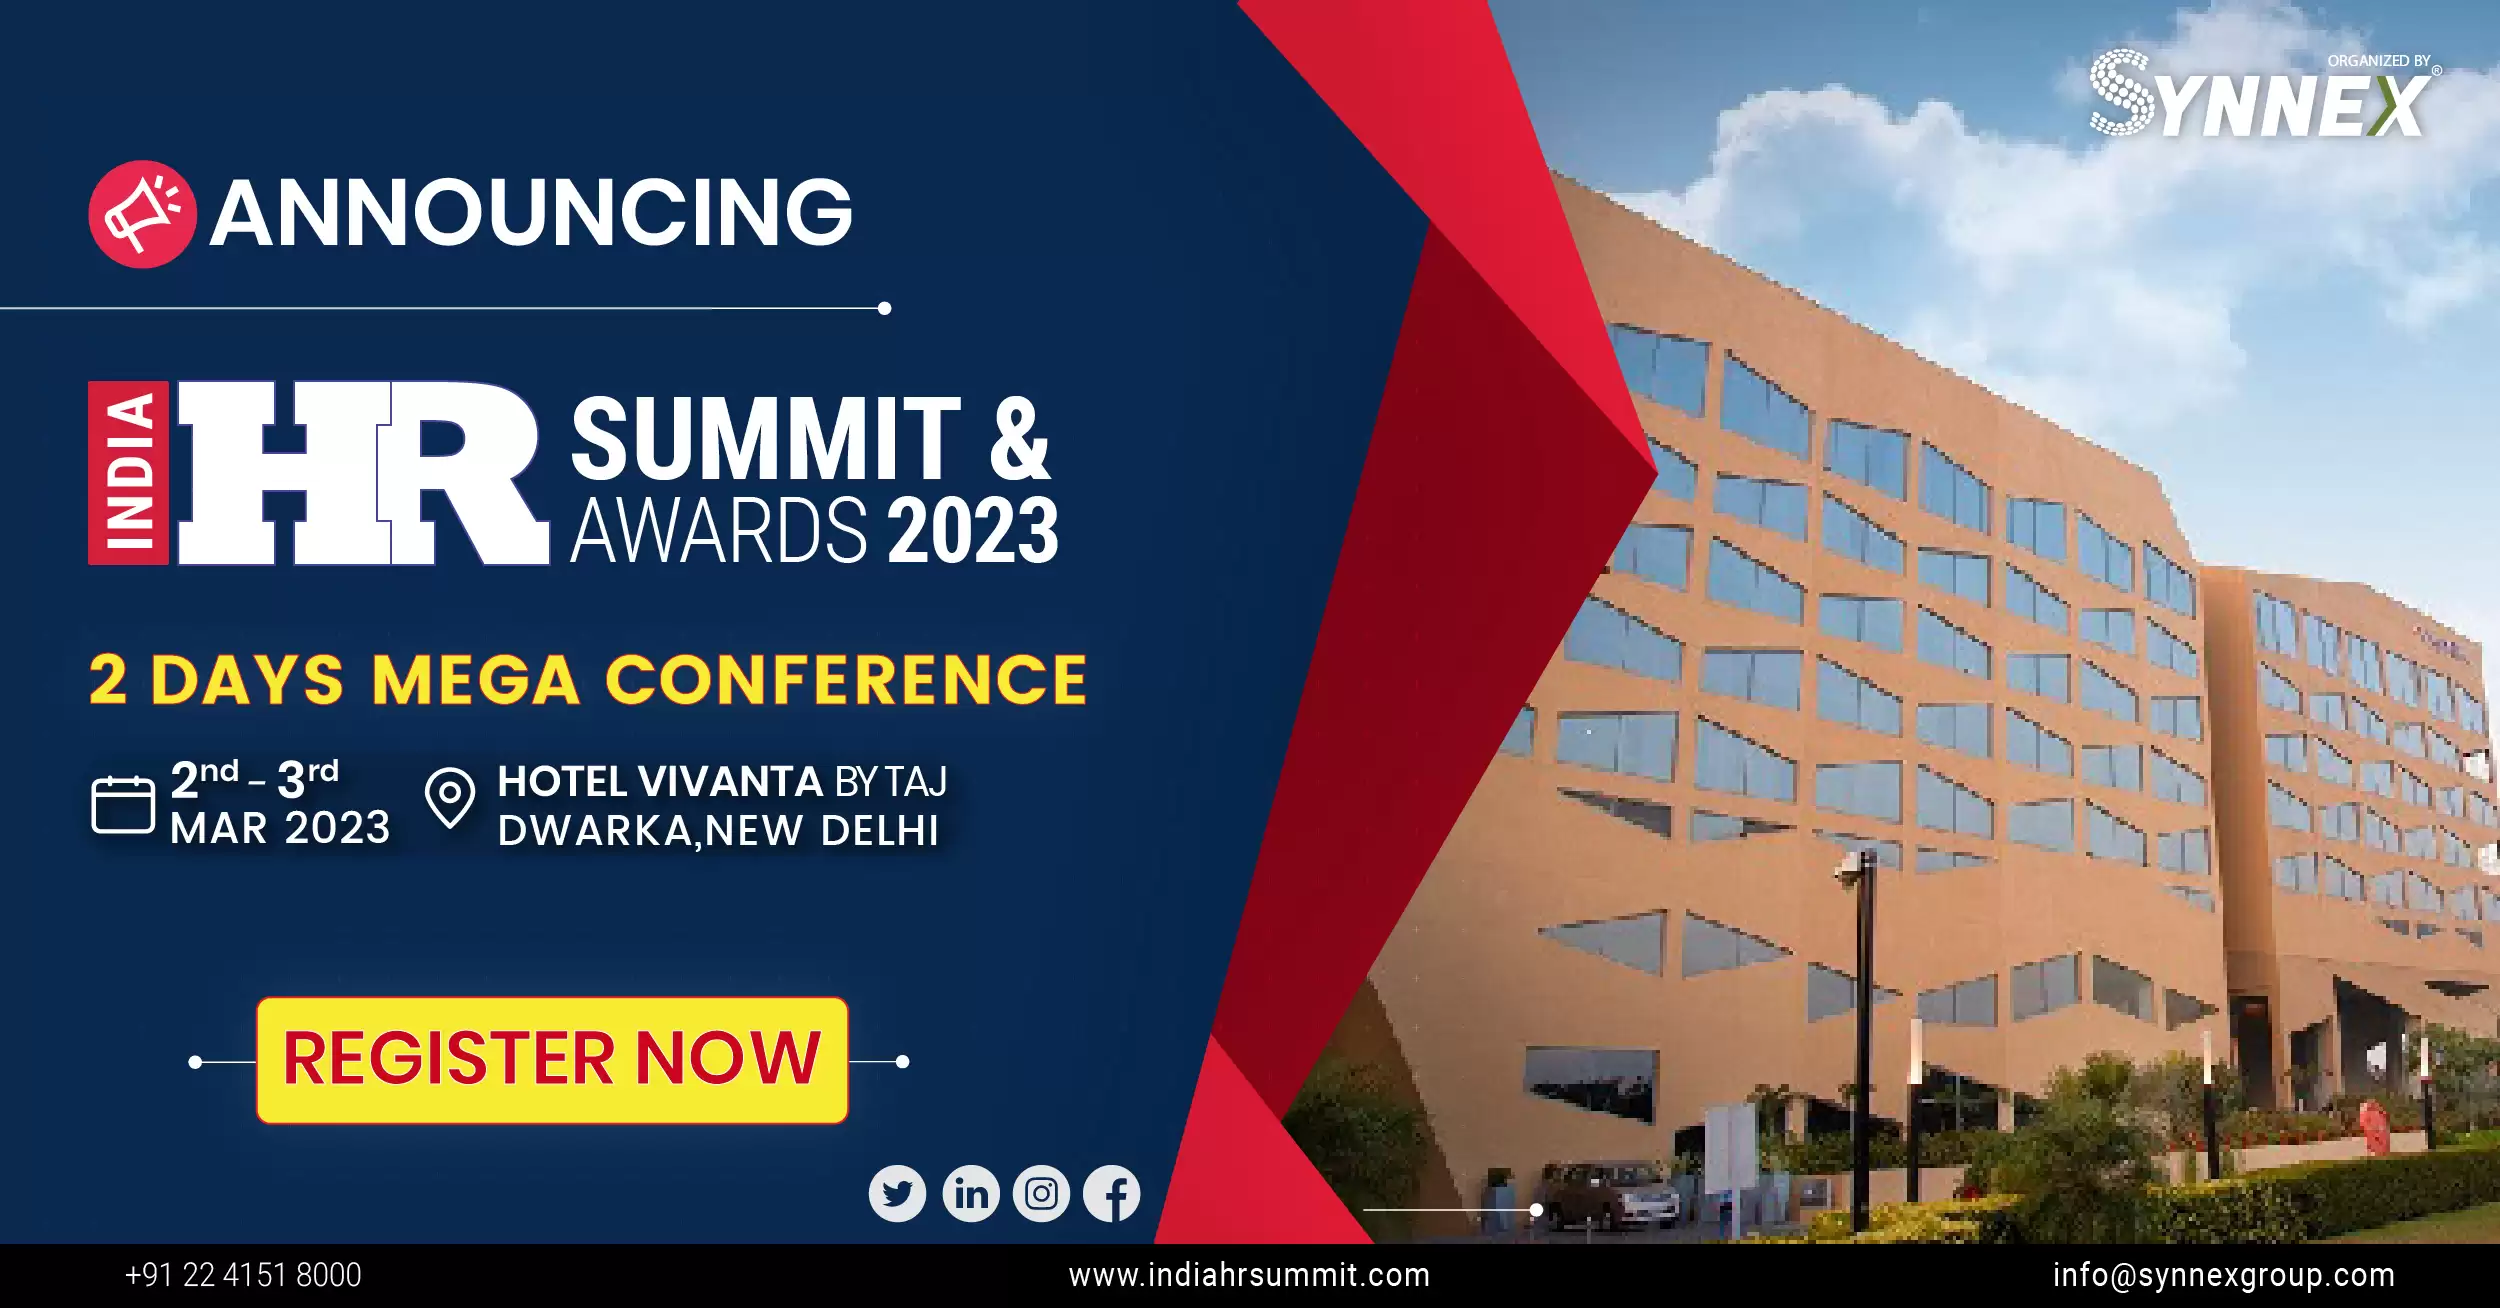 India Hr Summit & Awards 2023